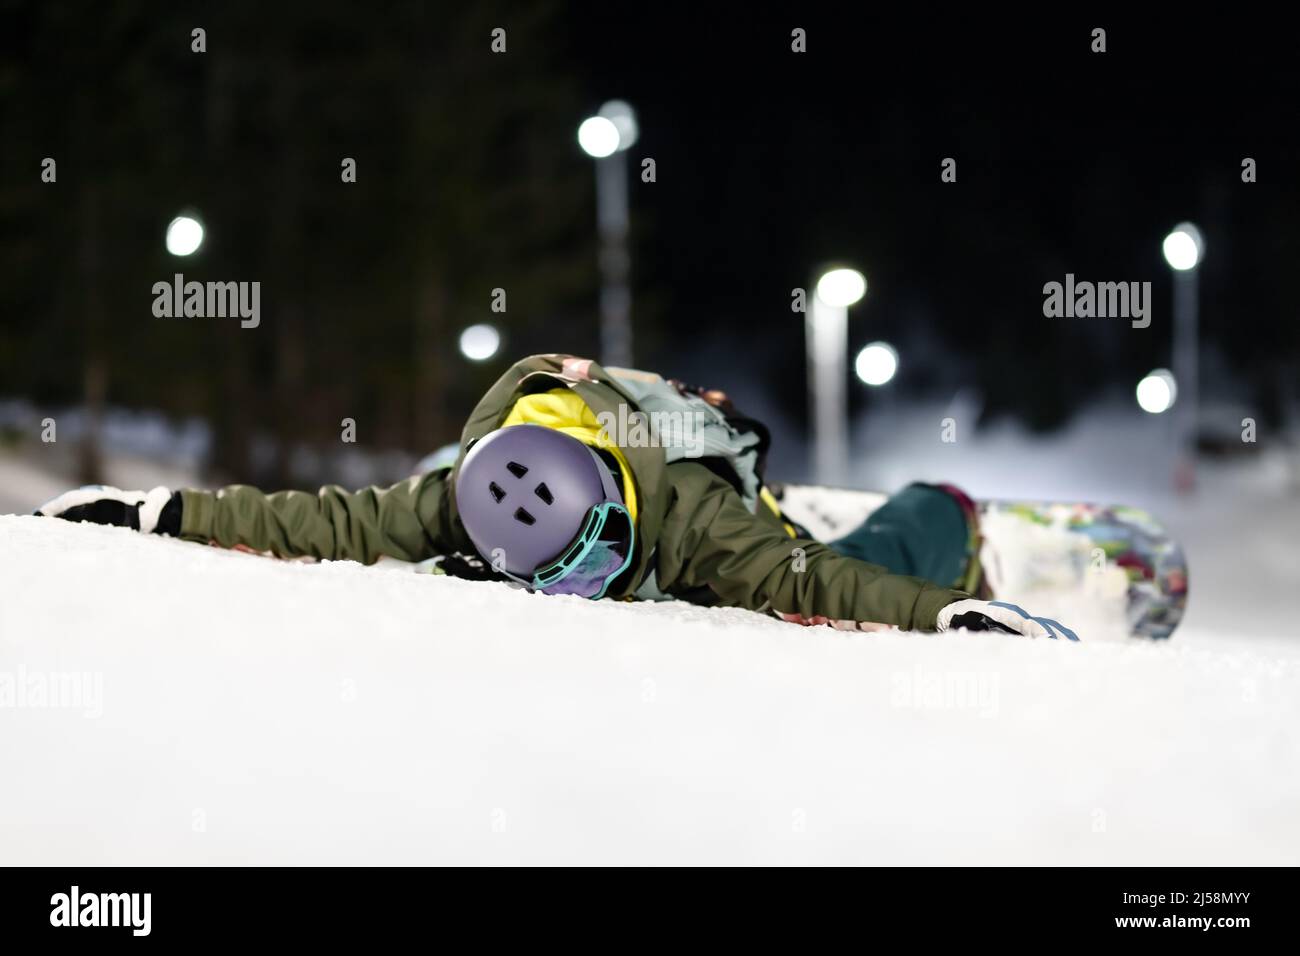 Ragazza snowboarder sdraiata a faccia in giù in pendenza. Sci notturno nella località invernale. Foto Stock